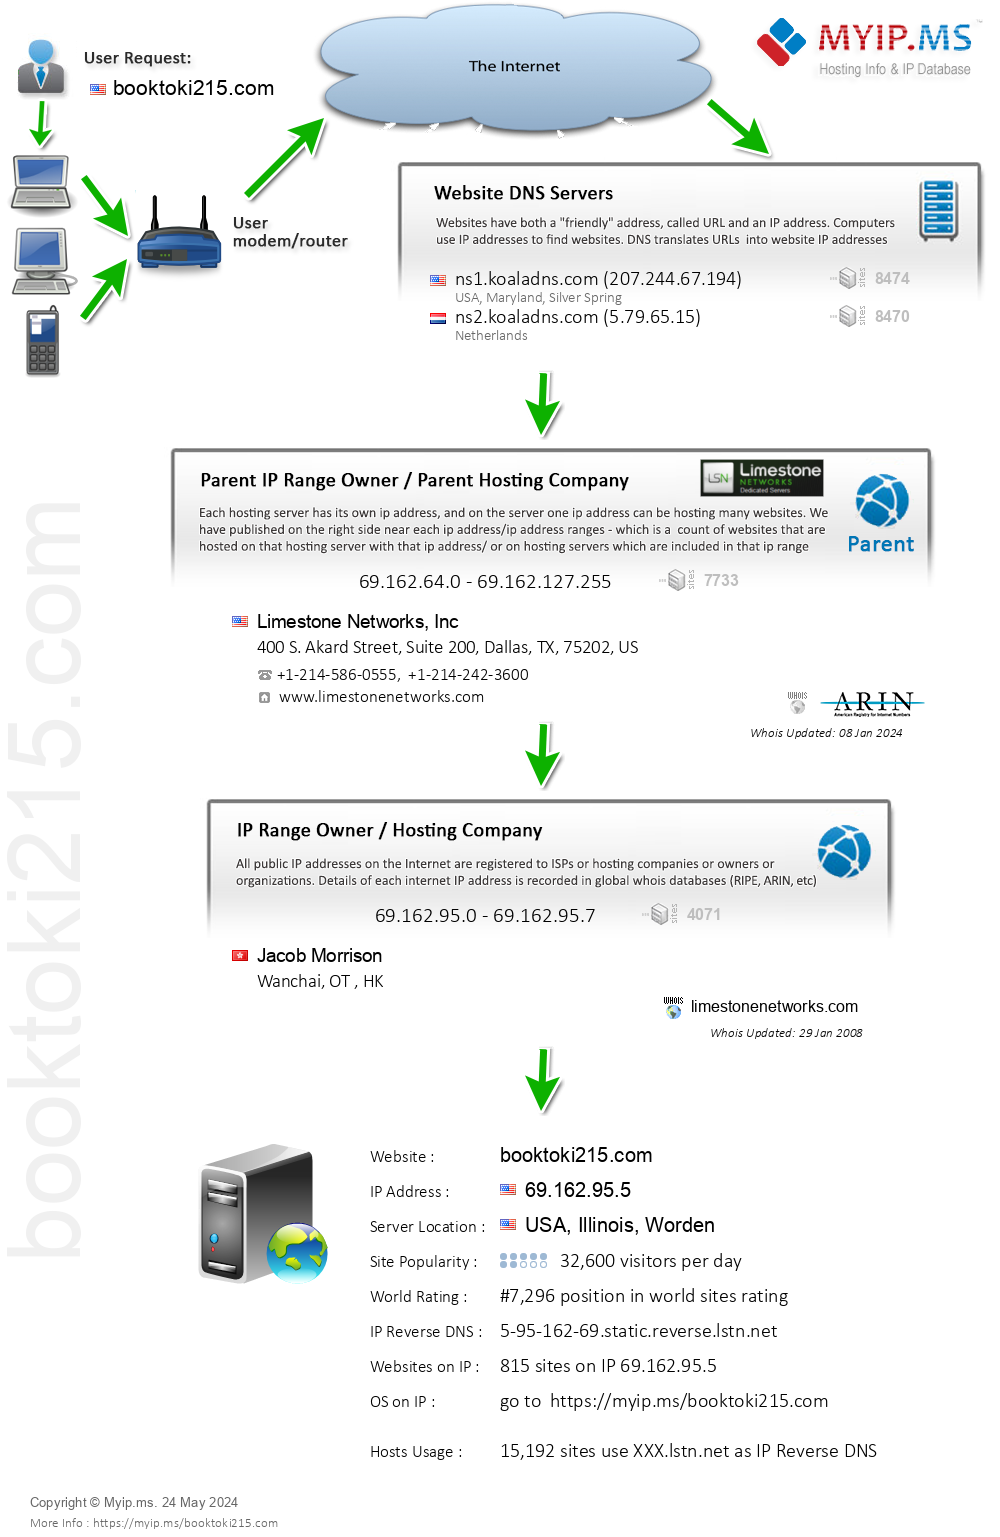 Booktoki215.com - Website Hosting Visual IP Diagram